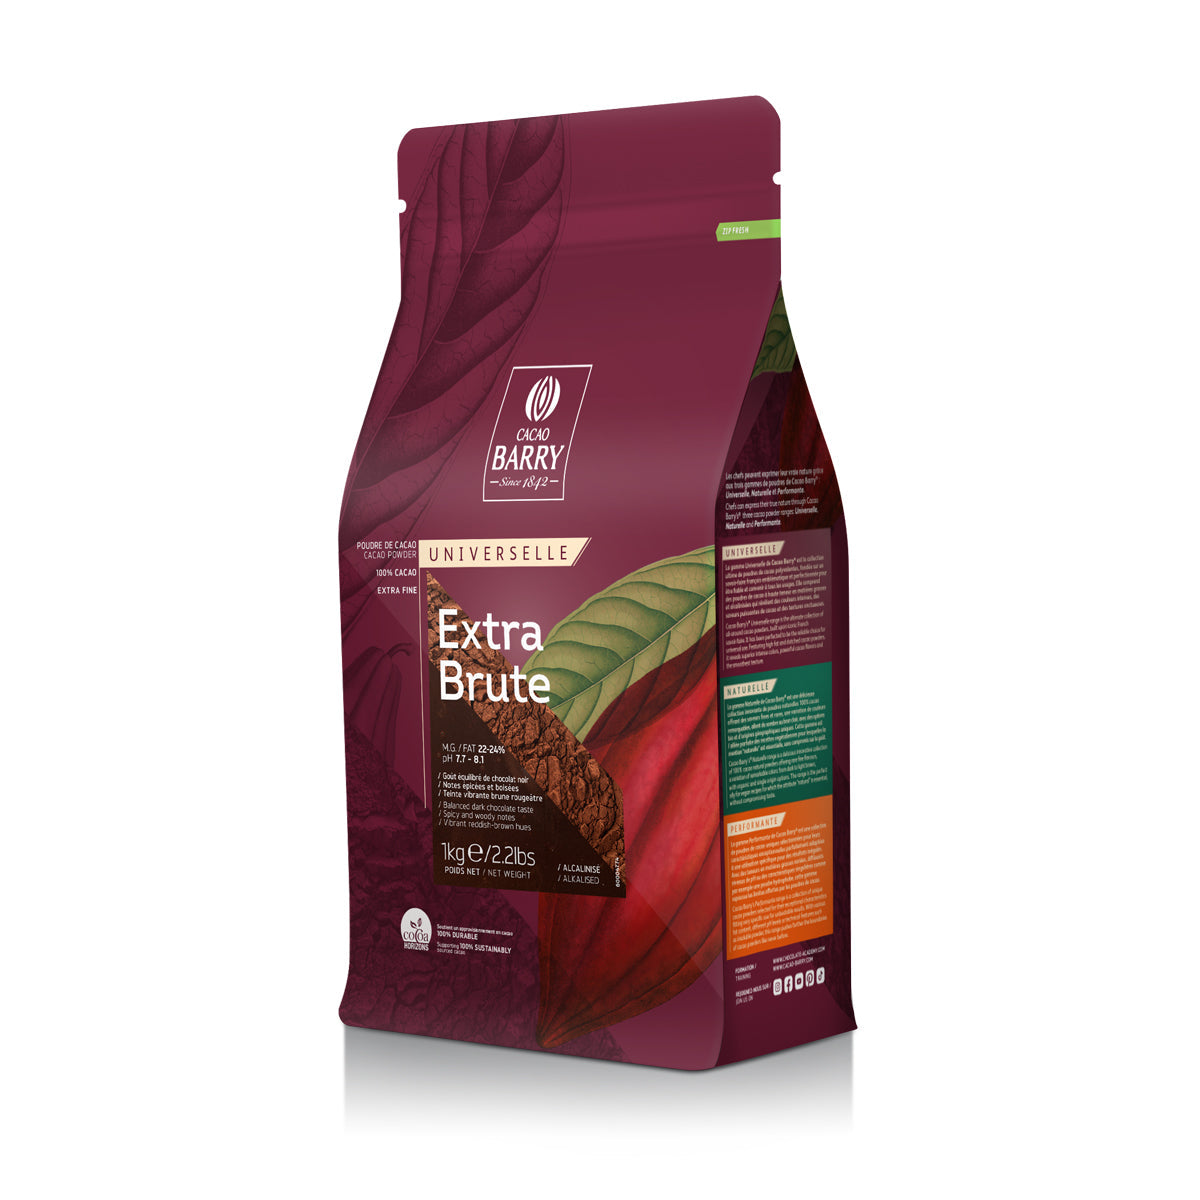 Cacao Barry Extra Brute Cocoa Powder 1 Kg Bag